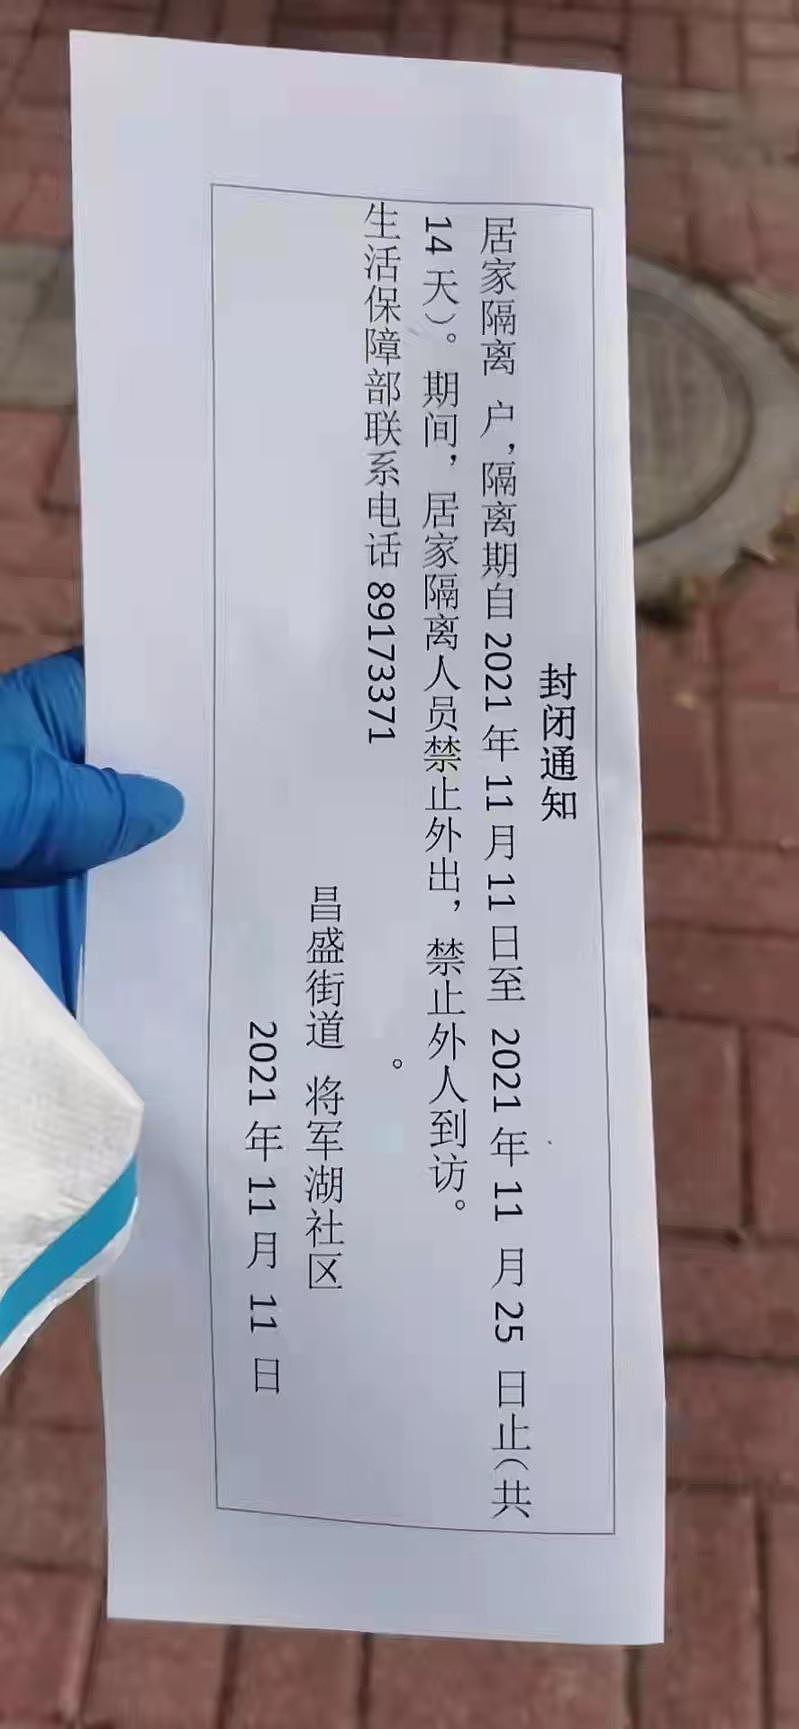 根据网传的「封闭通知」，庄河市居家隔离人员本月25日前都禁止外出。（取自微信）